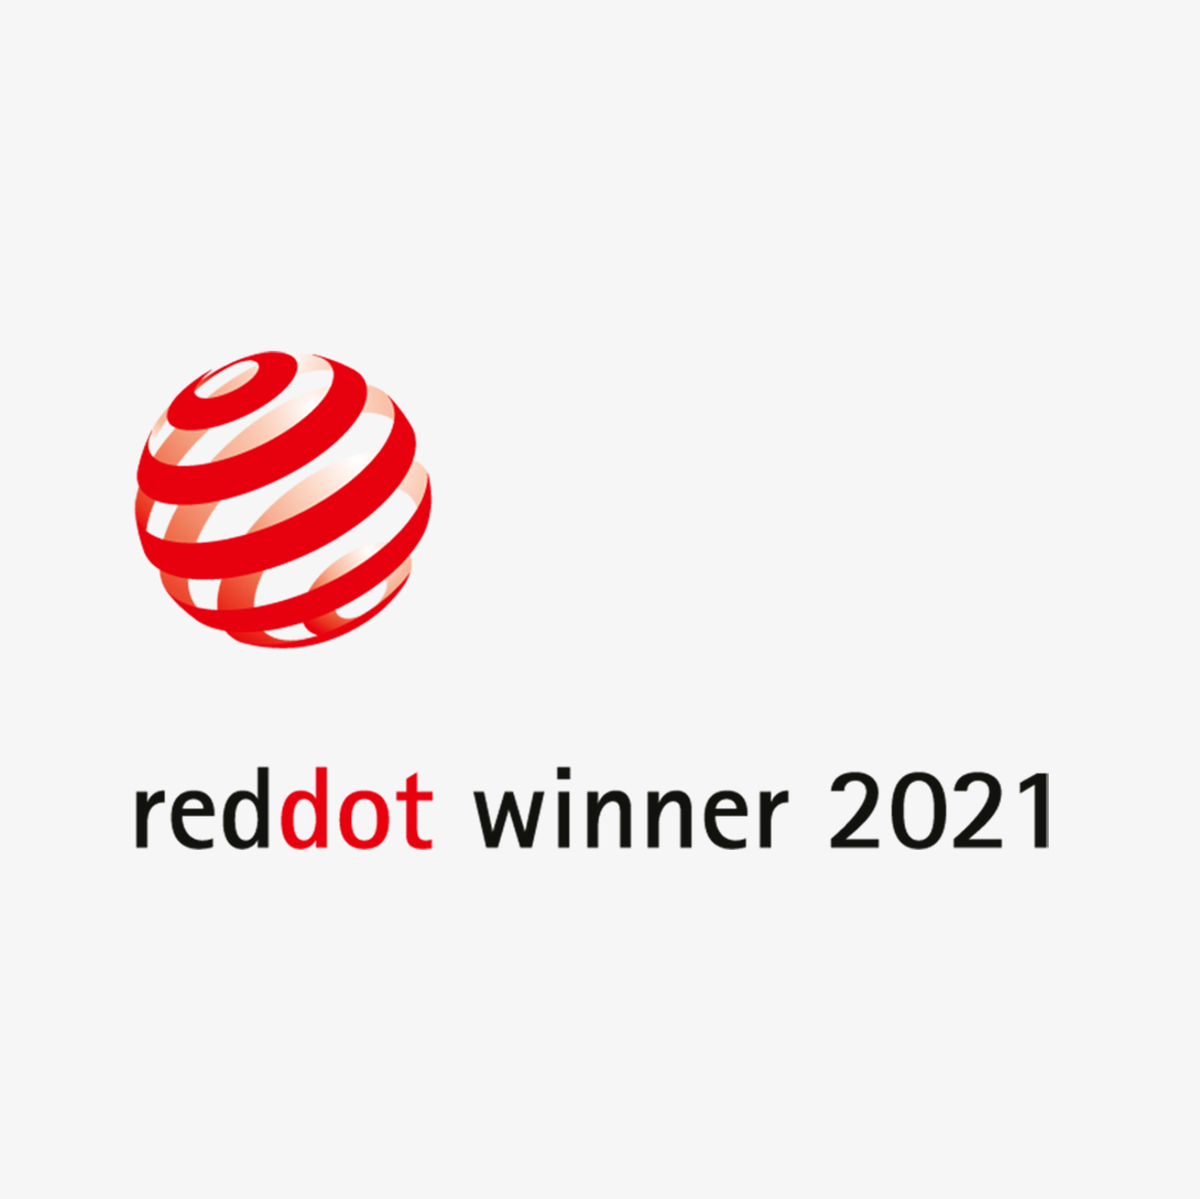 Reddot winner Award Logo 2021